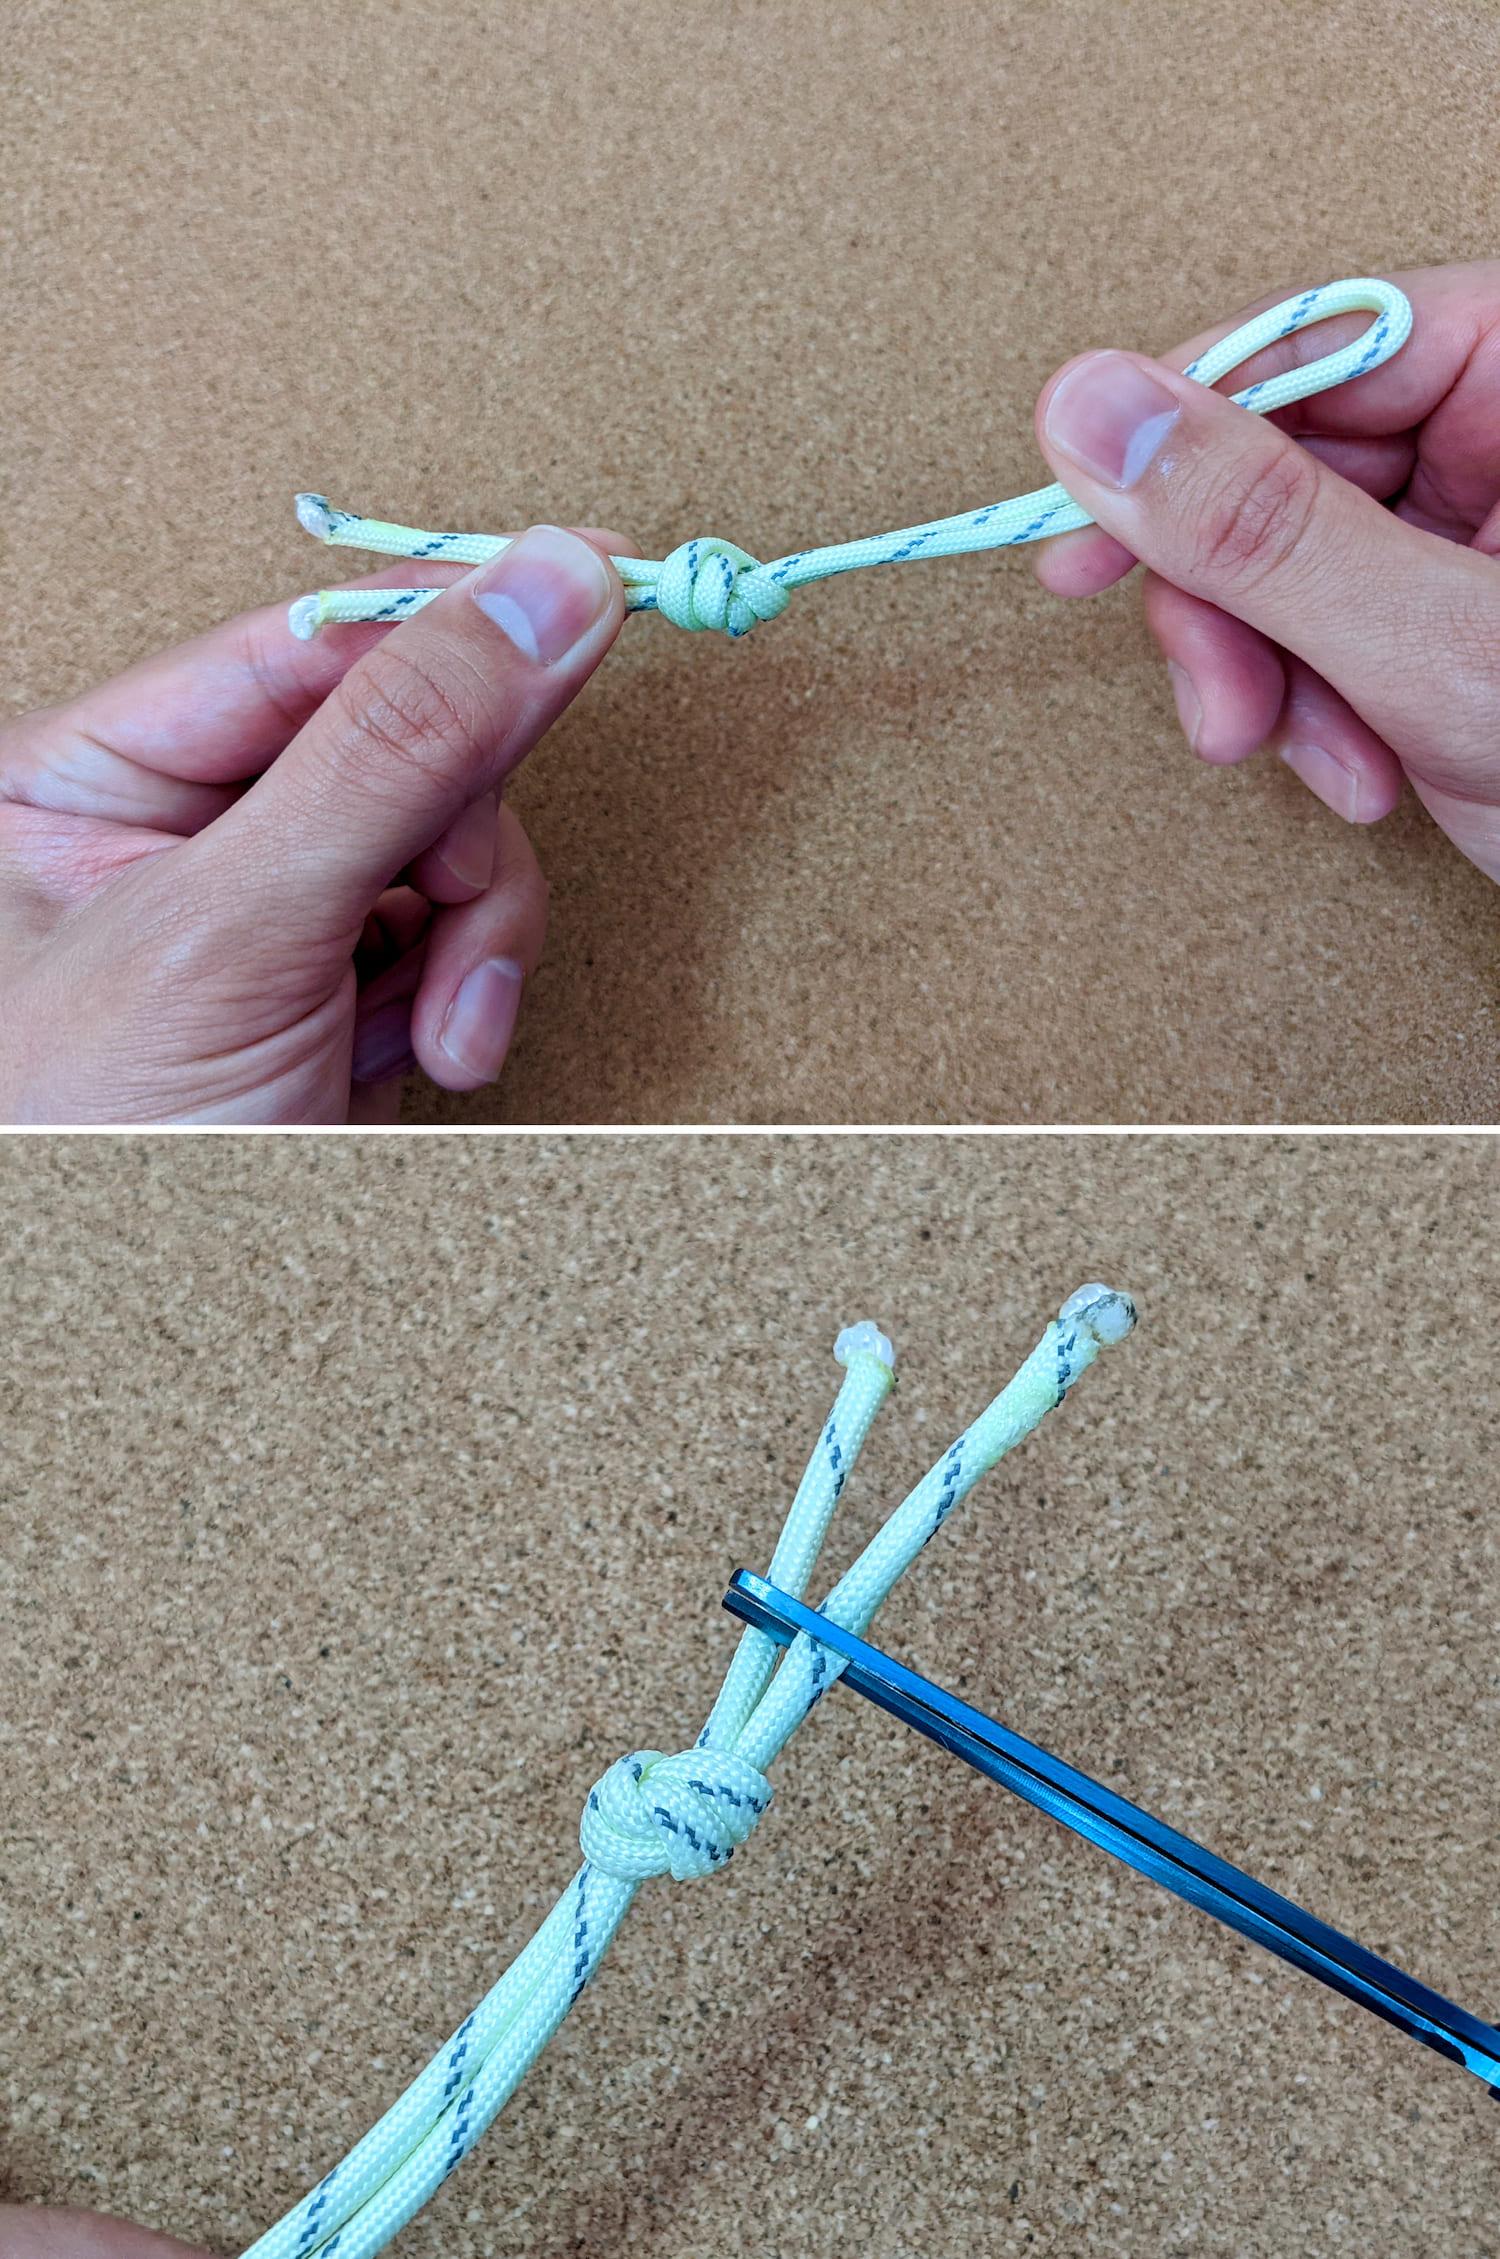 ロープの両側を力一杯引っ張っている様子と、ロープの端をハサミで切っている様子